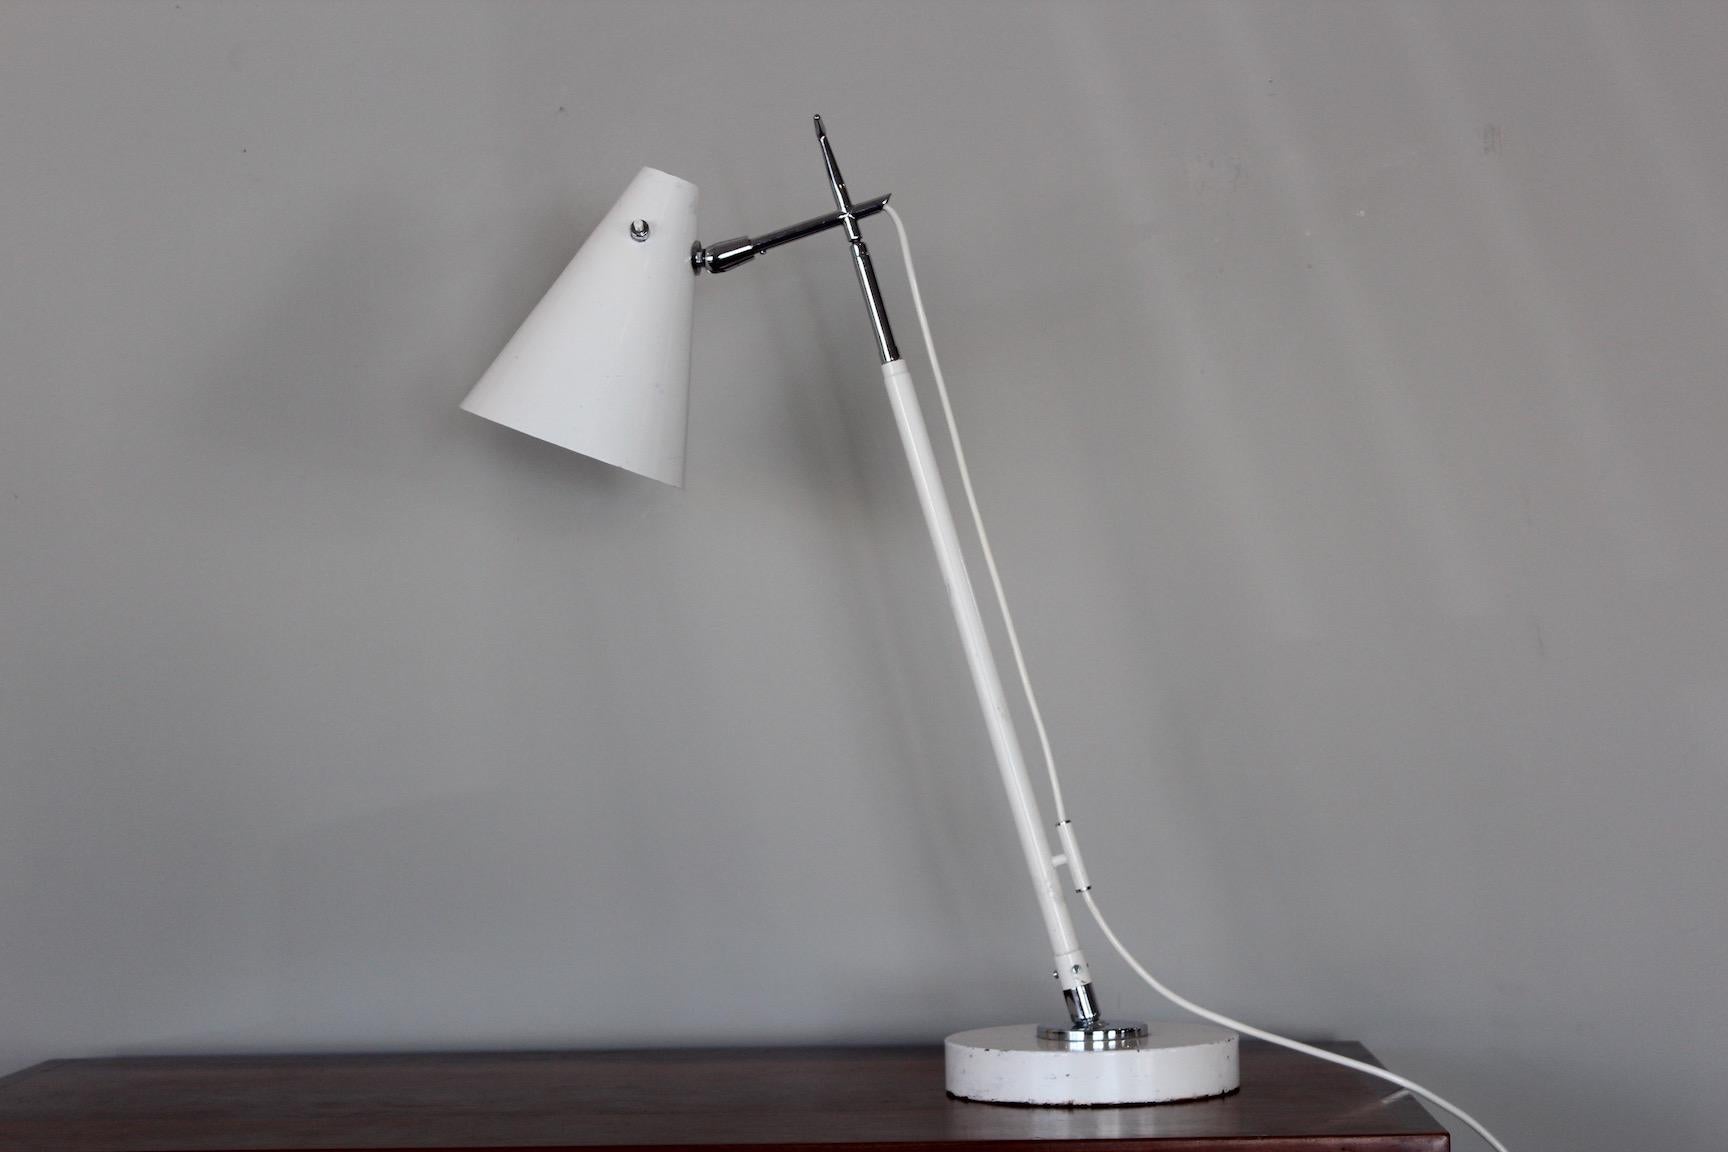 Model 201 telescoping table/floor lamp by Giuseppe Ostuni for Oluce.